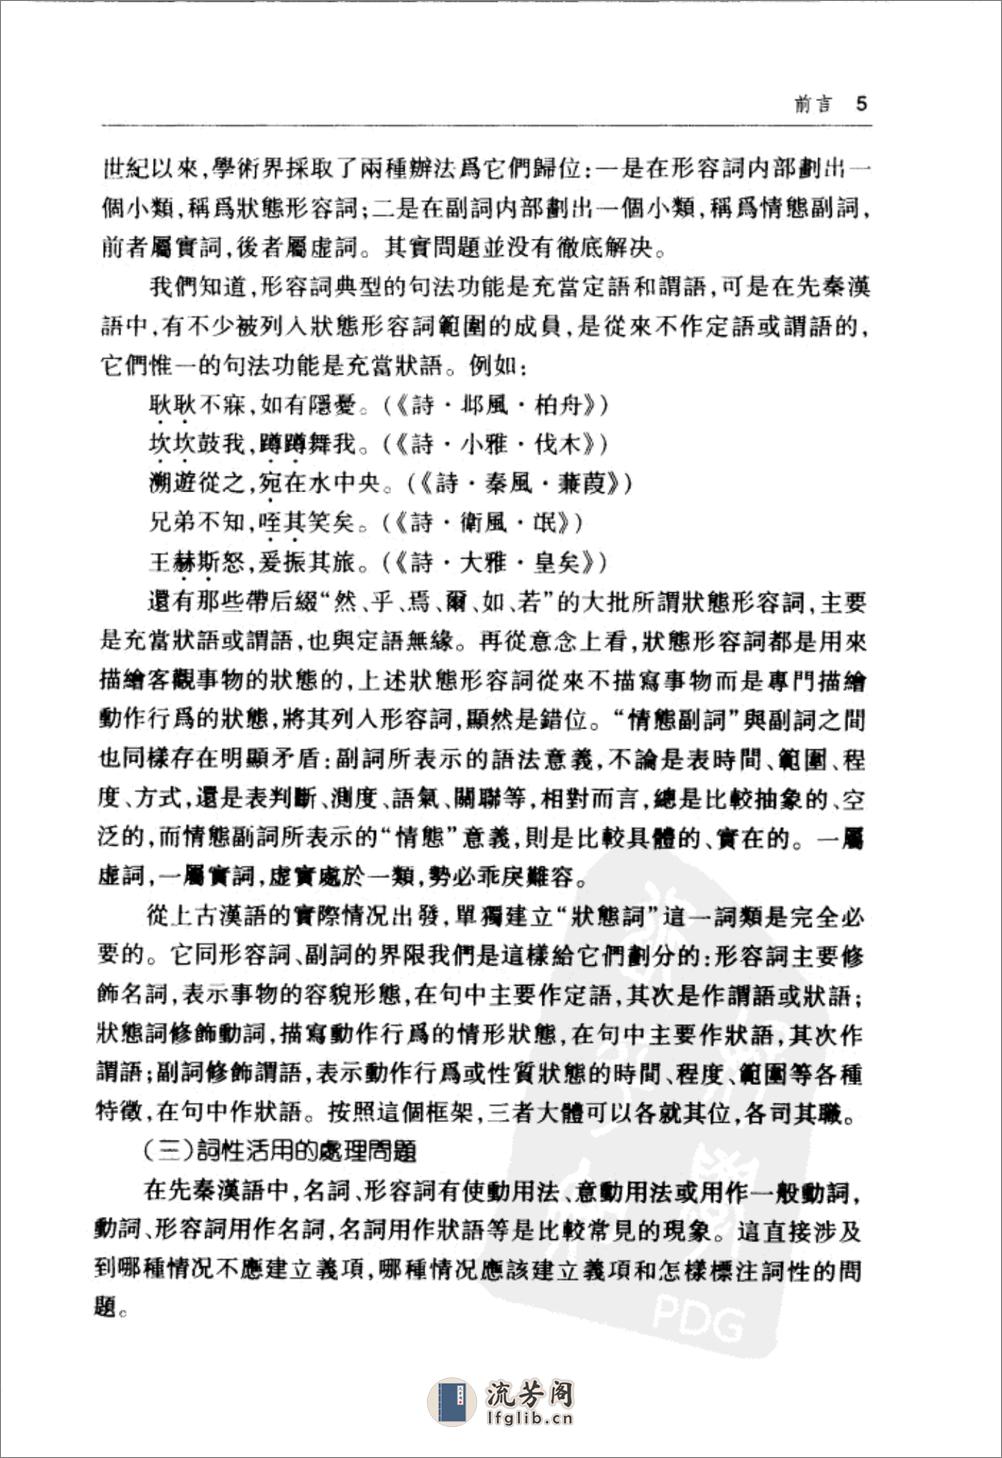 陈克烱 左传详解词典 - 第7页预览图